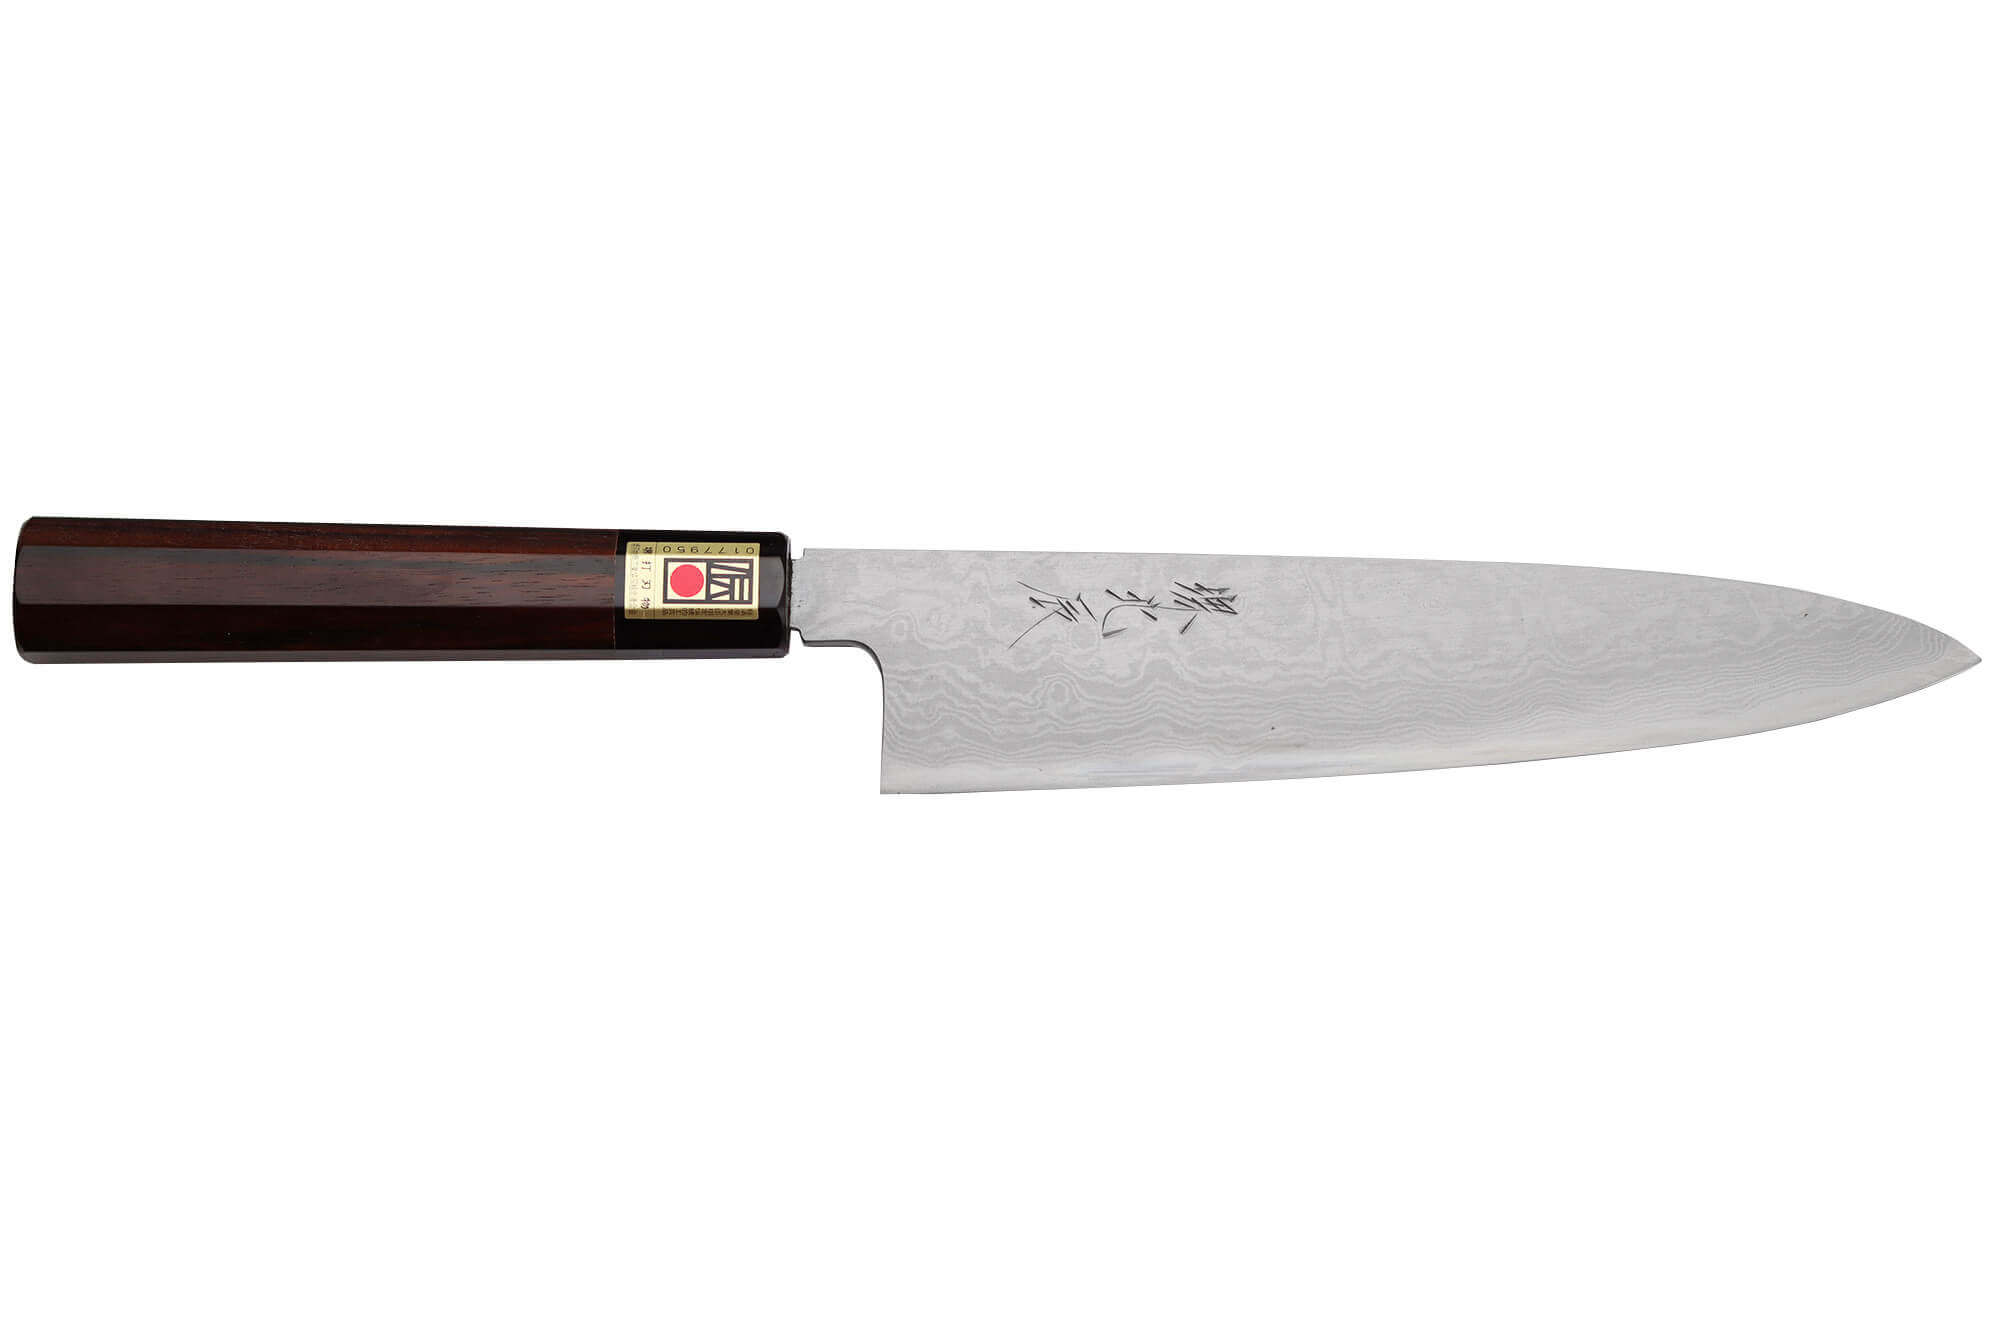 Couteaux Japonais - Couteaux Cuisine Professionnels - La Toque d'Or (2) -  La Toque d'Or